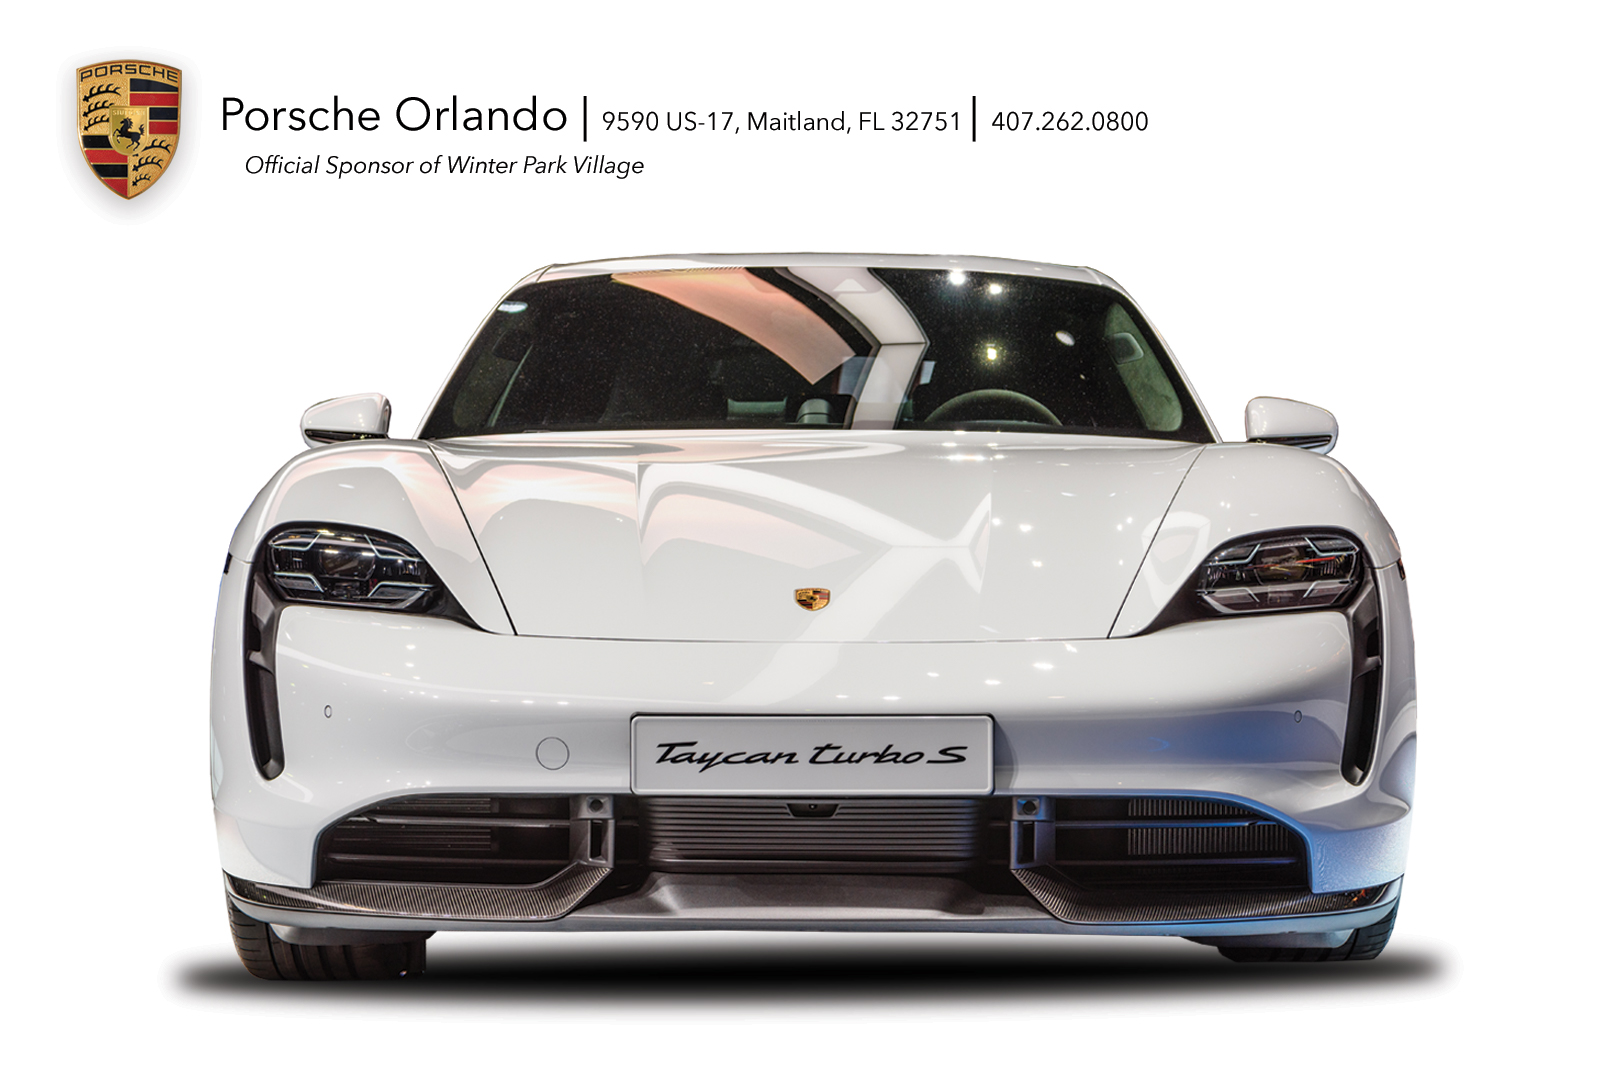 Porsche of Orlando